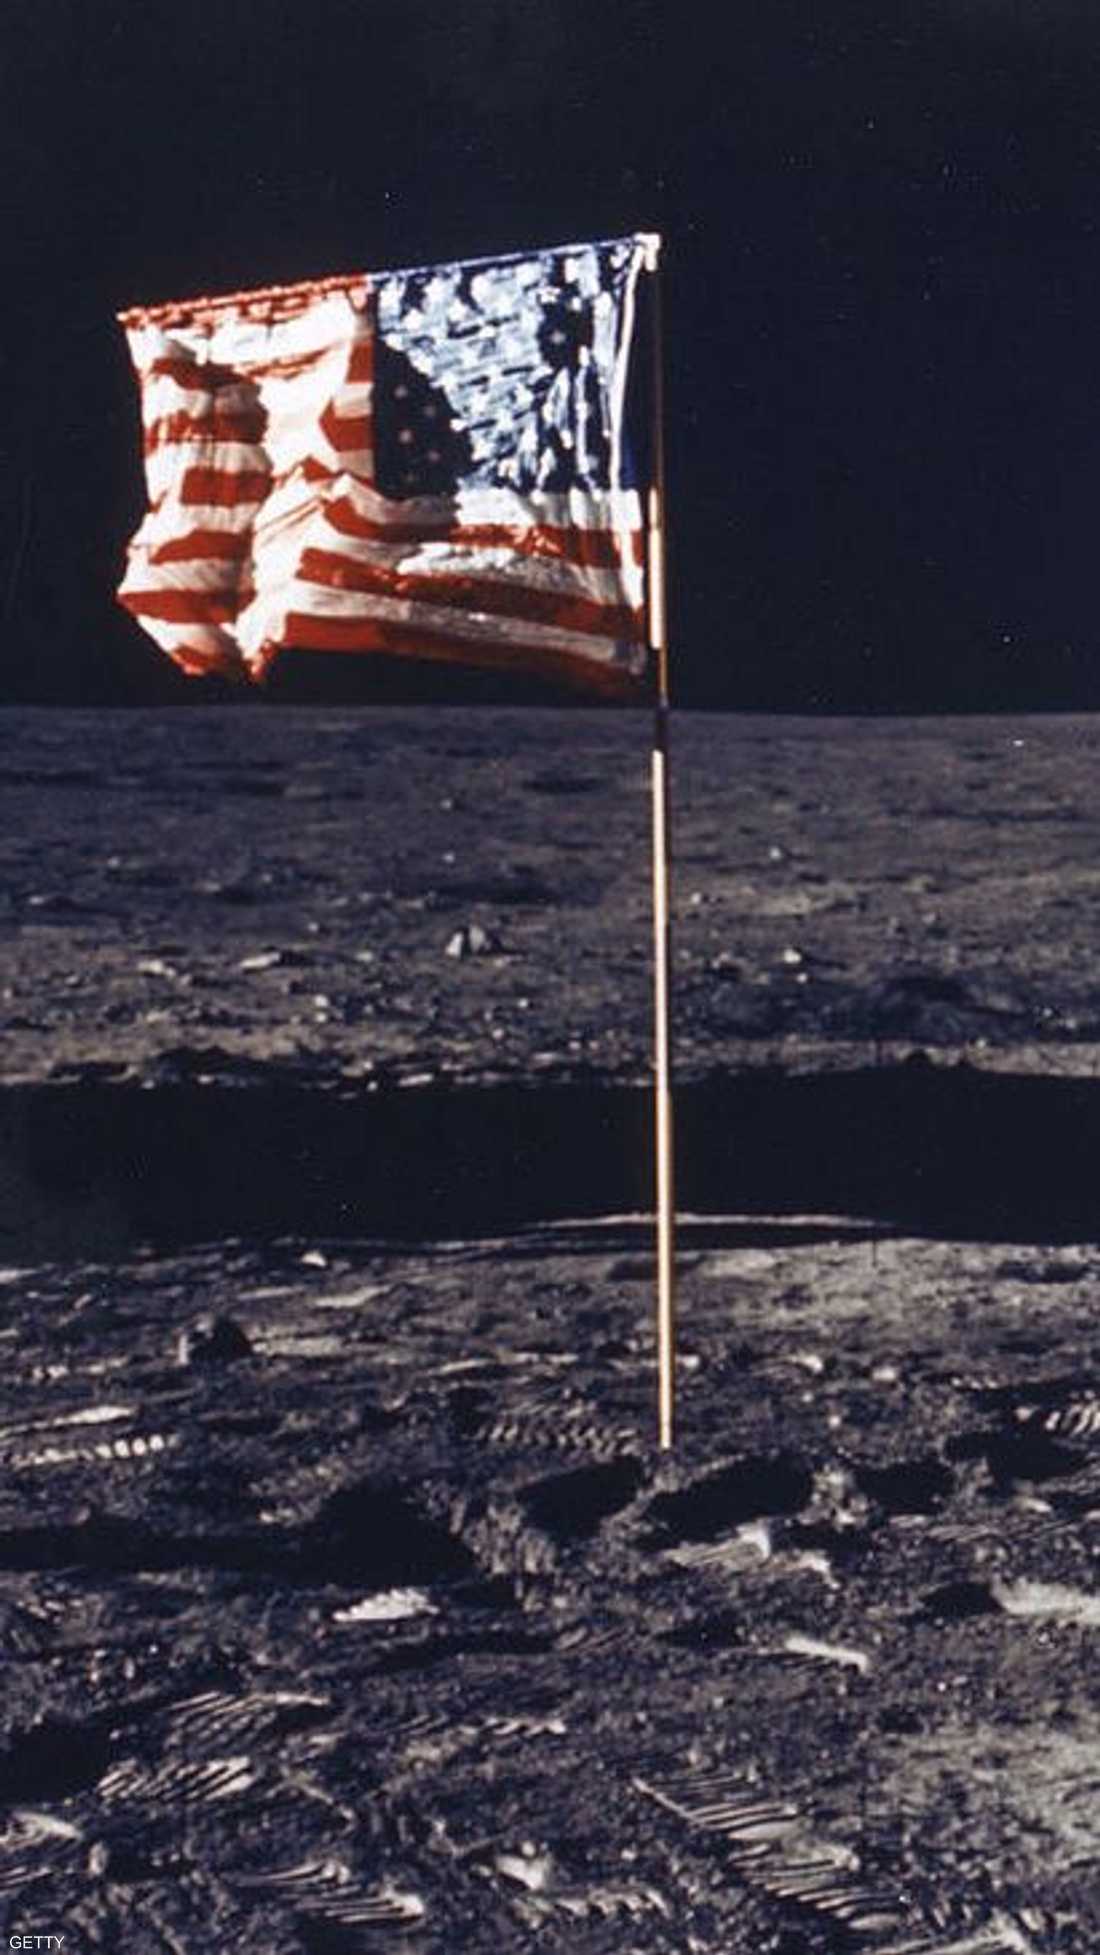 الهبوط على القمر شكل حدثا تاريخيا